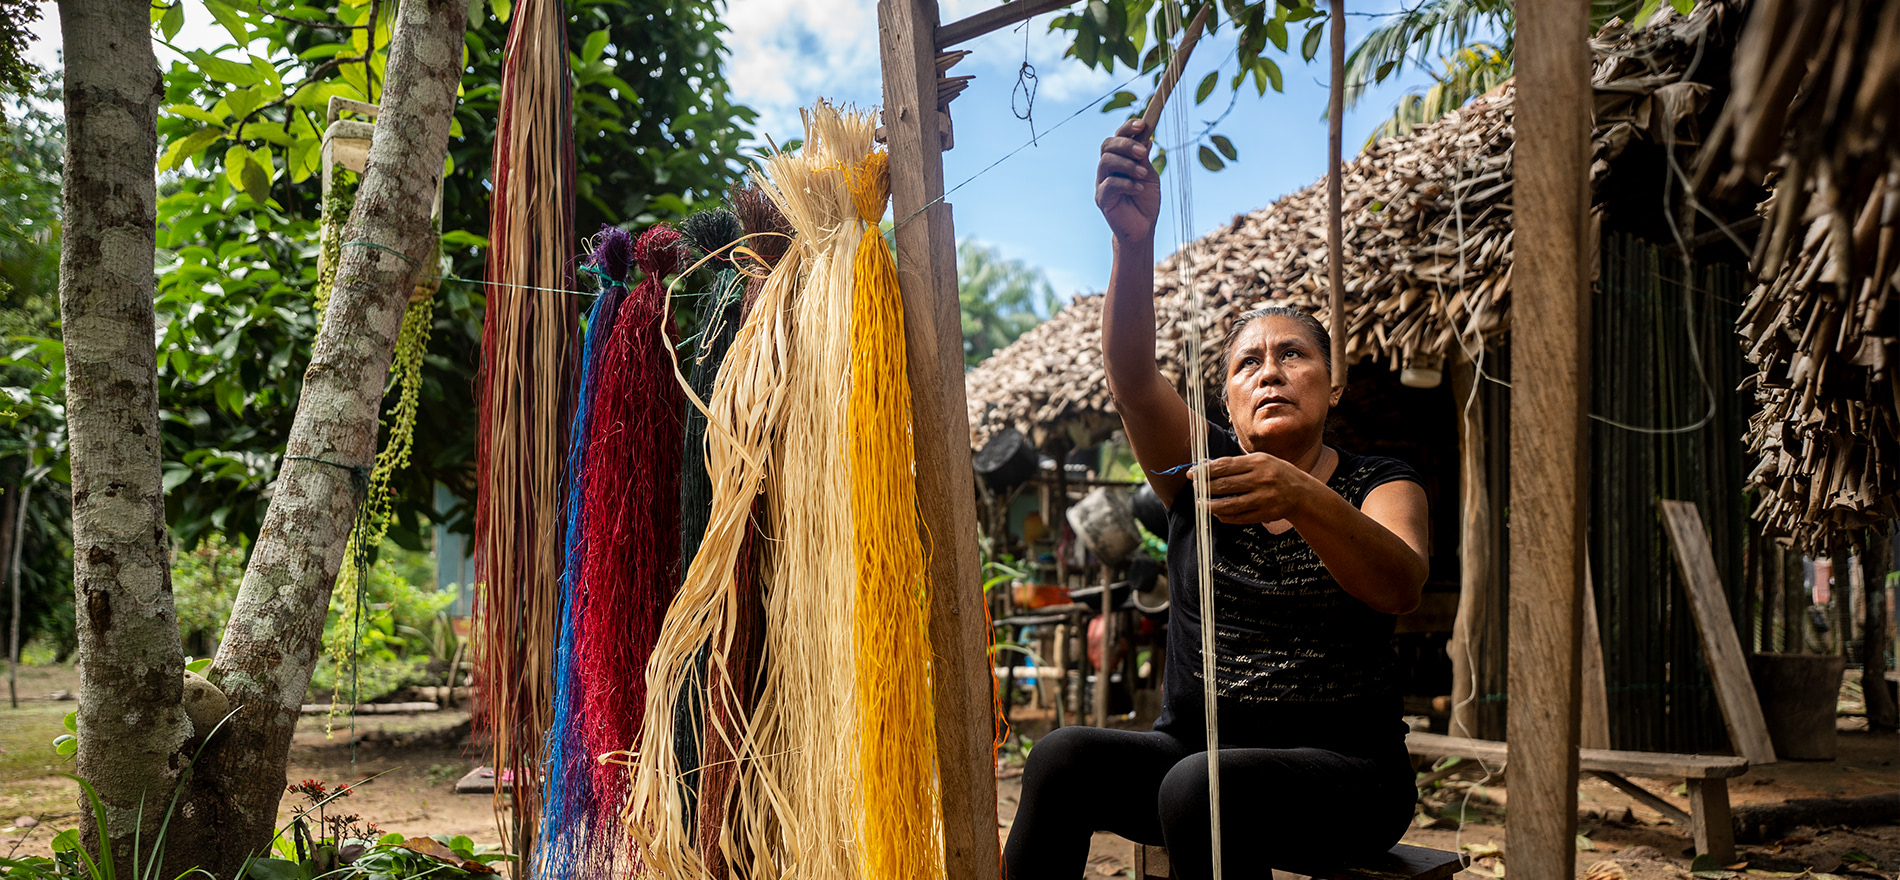 mujer campesina en rancheria tejiendo y haciendo artesanias de colombia.